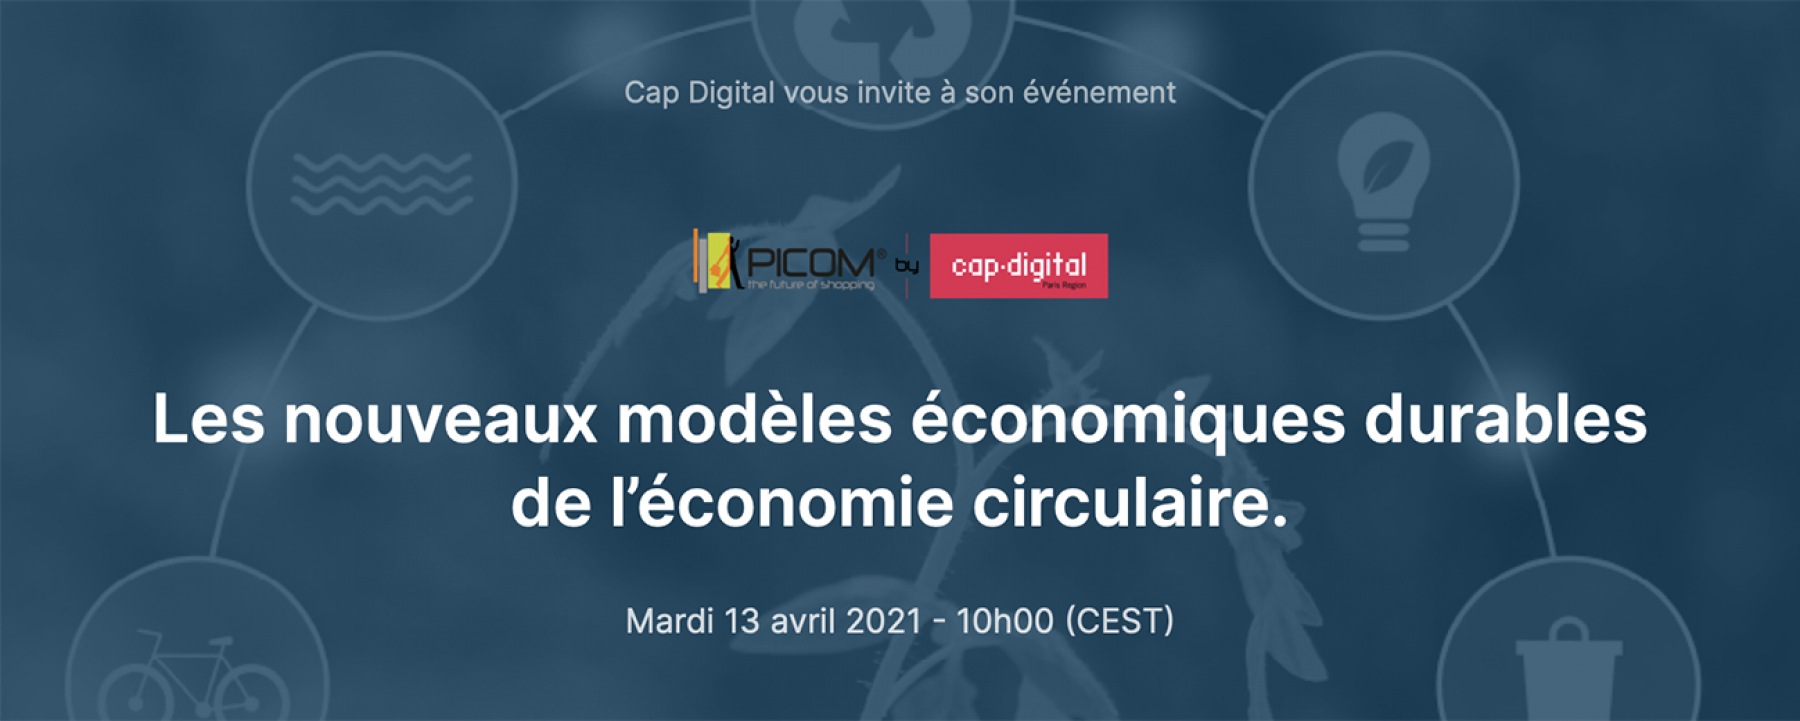 Les nouveaux modèles économiques durables de l’économie circulaire, webinar par PICOM le 13 avril 2021